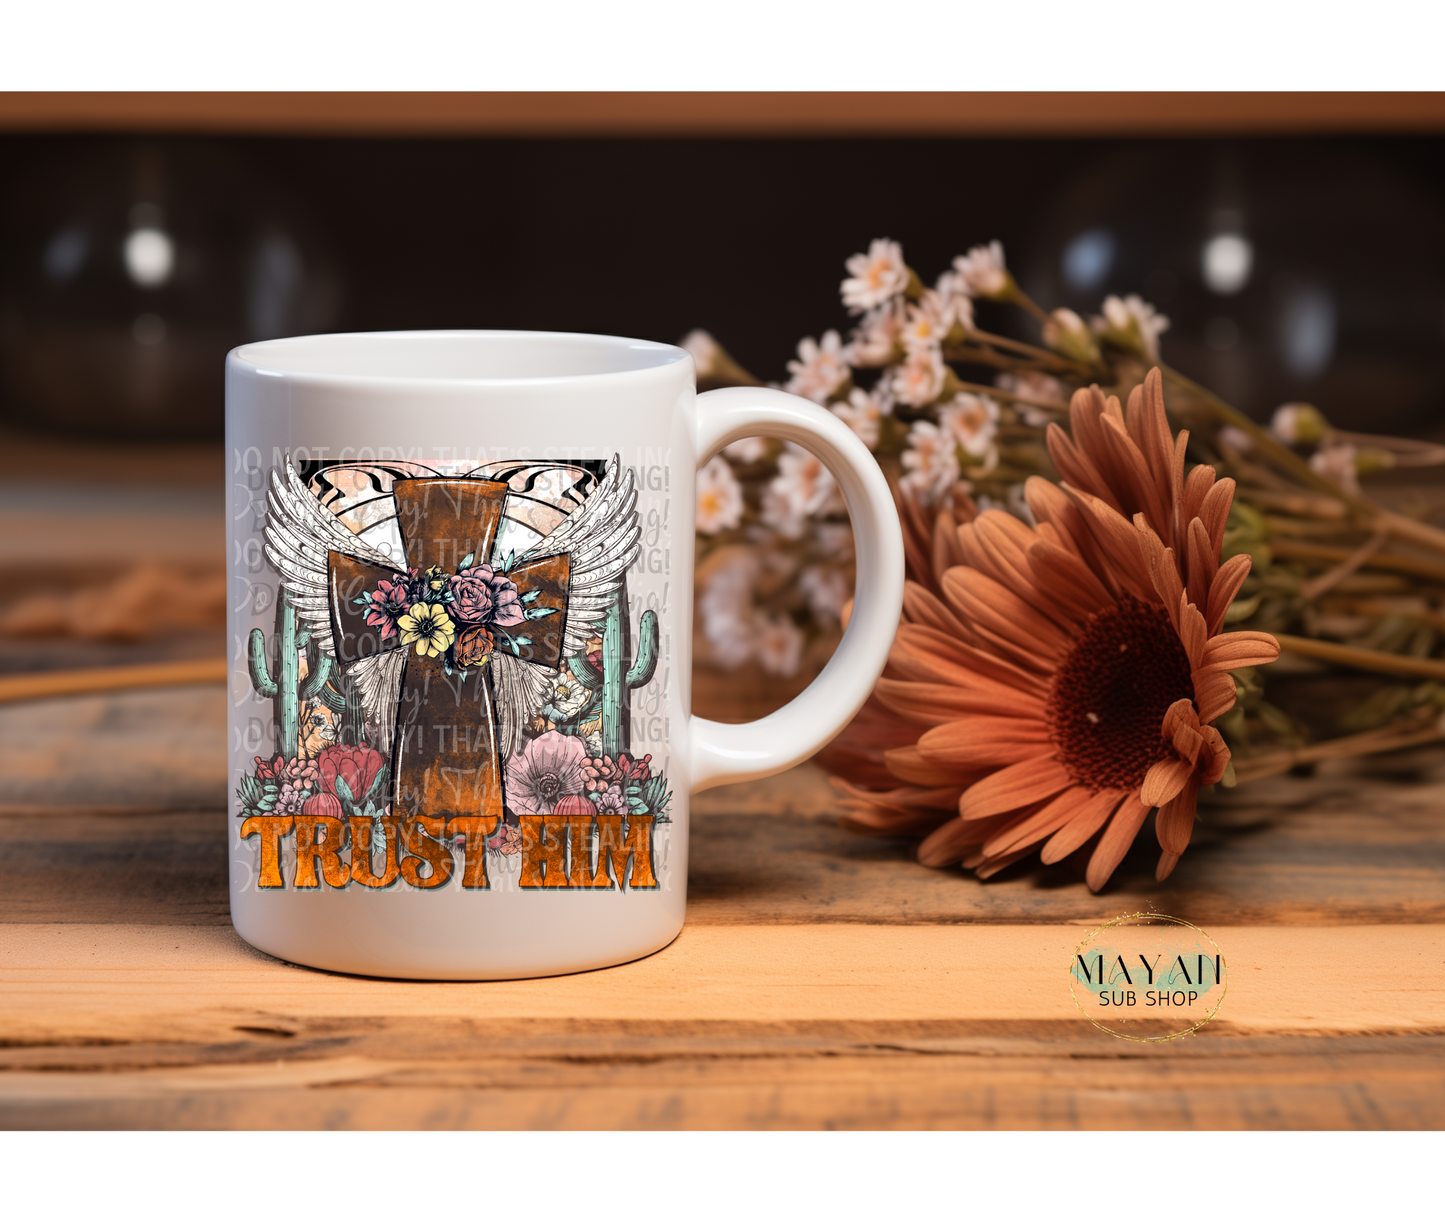 Trust Him 15 oz. coffee mug. -Mayan Sub Shop